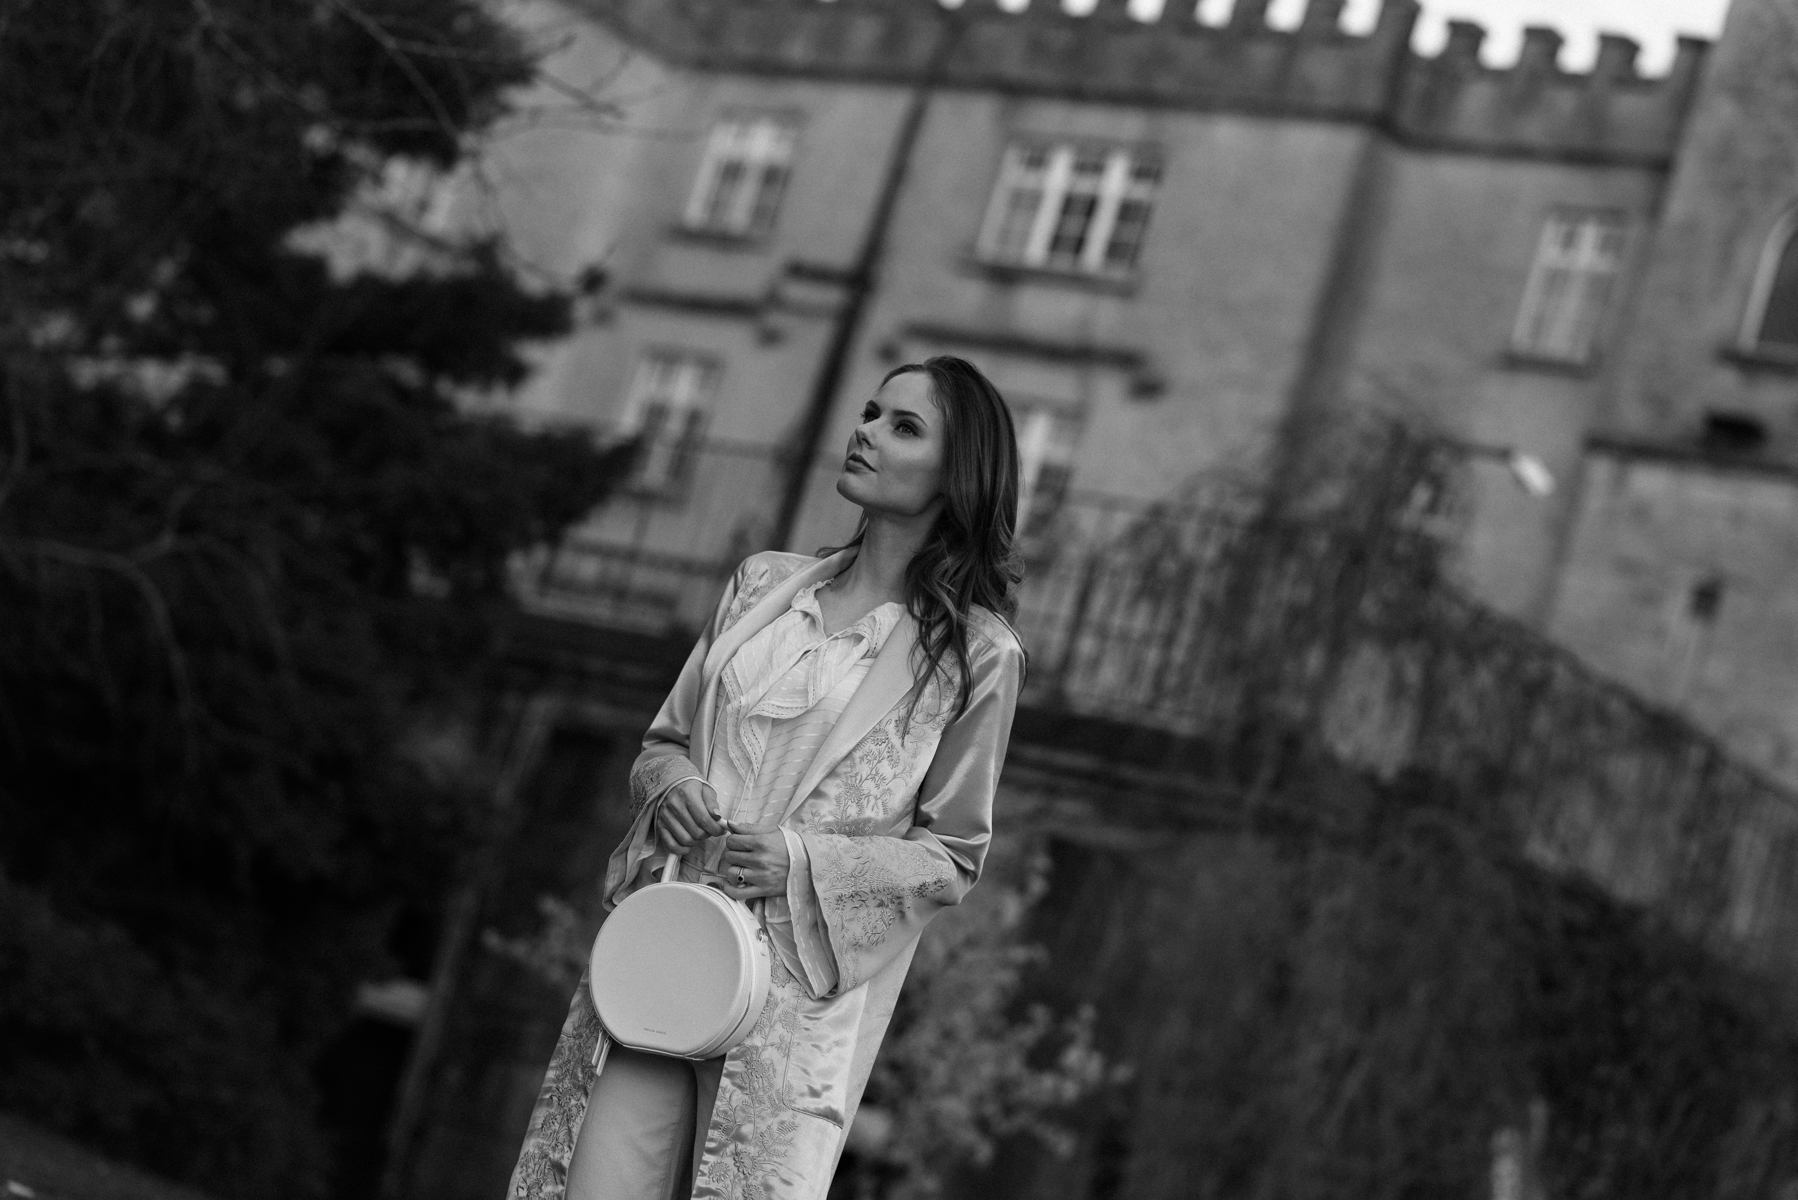 Alyssa Campanella of The A List blog wears the Maryella coat from Paige denim at the romantic Irish castle Cabra Castle in Ireland